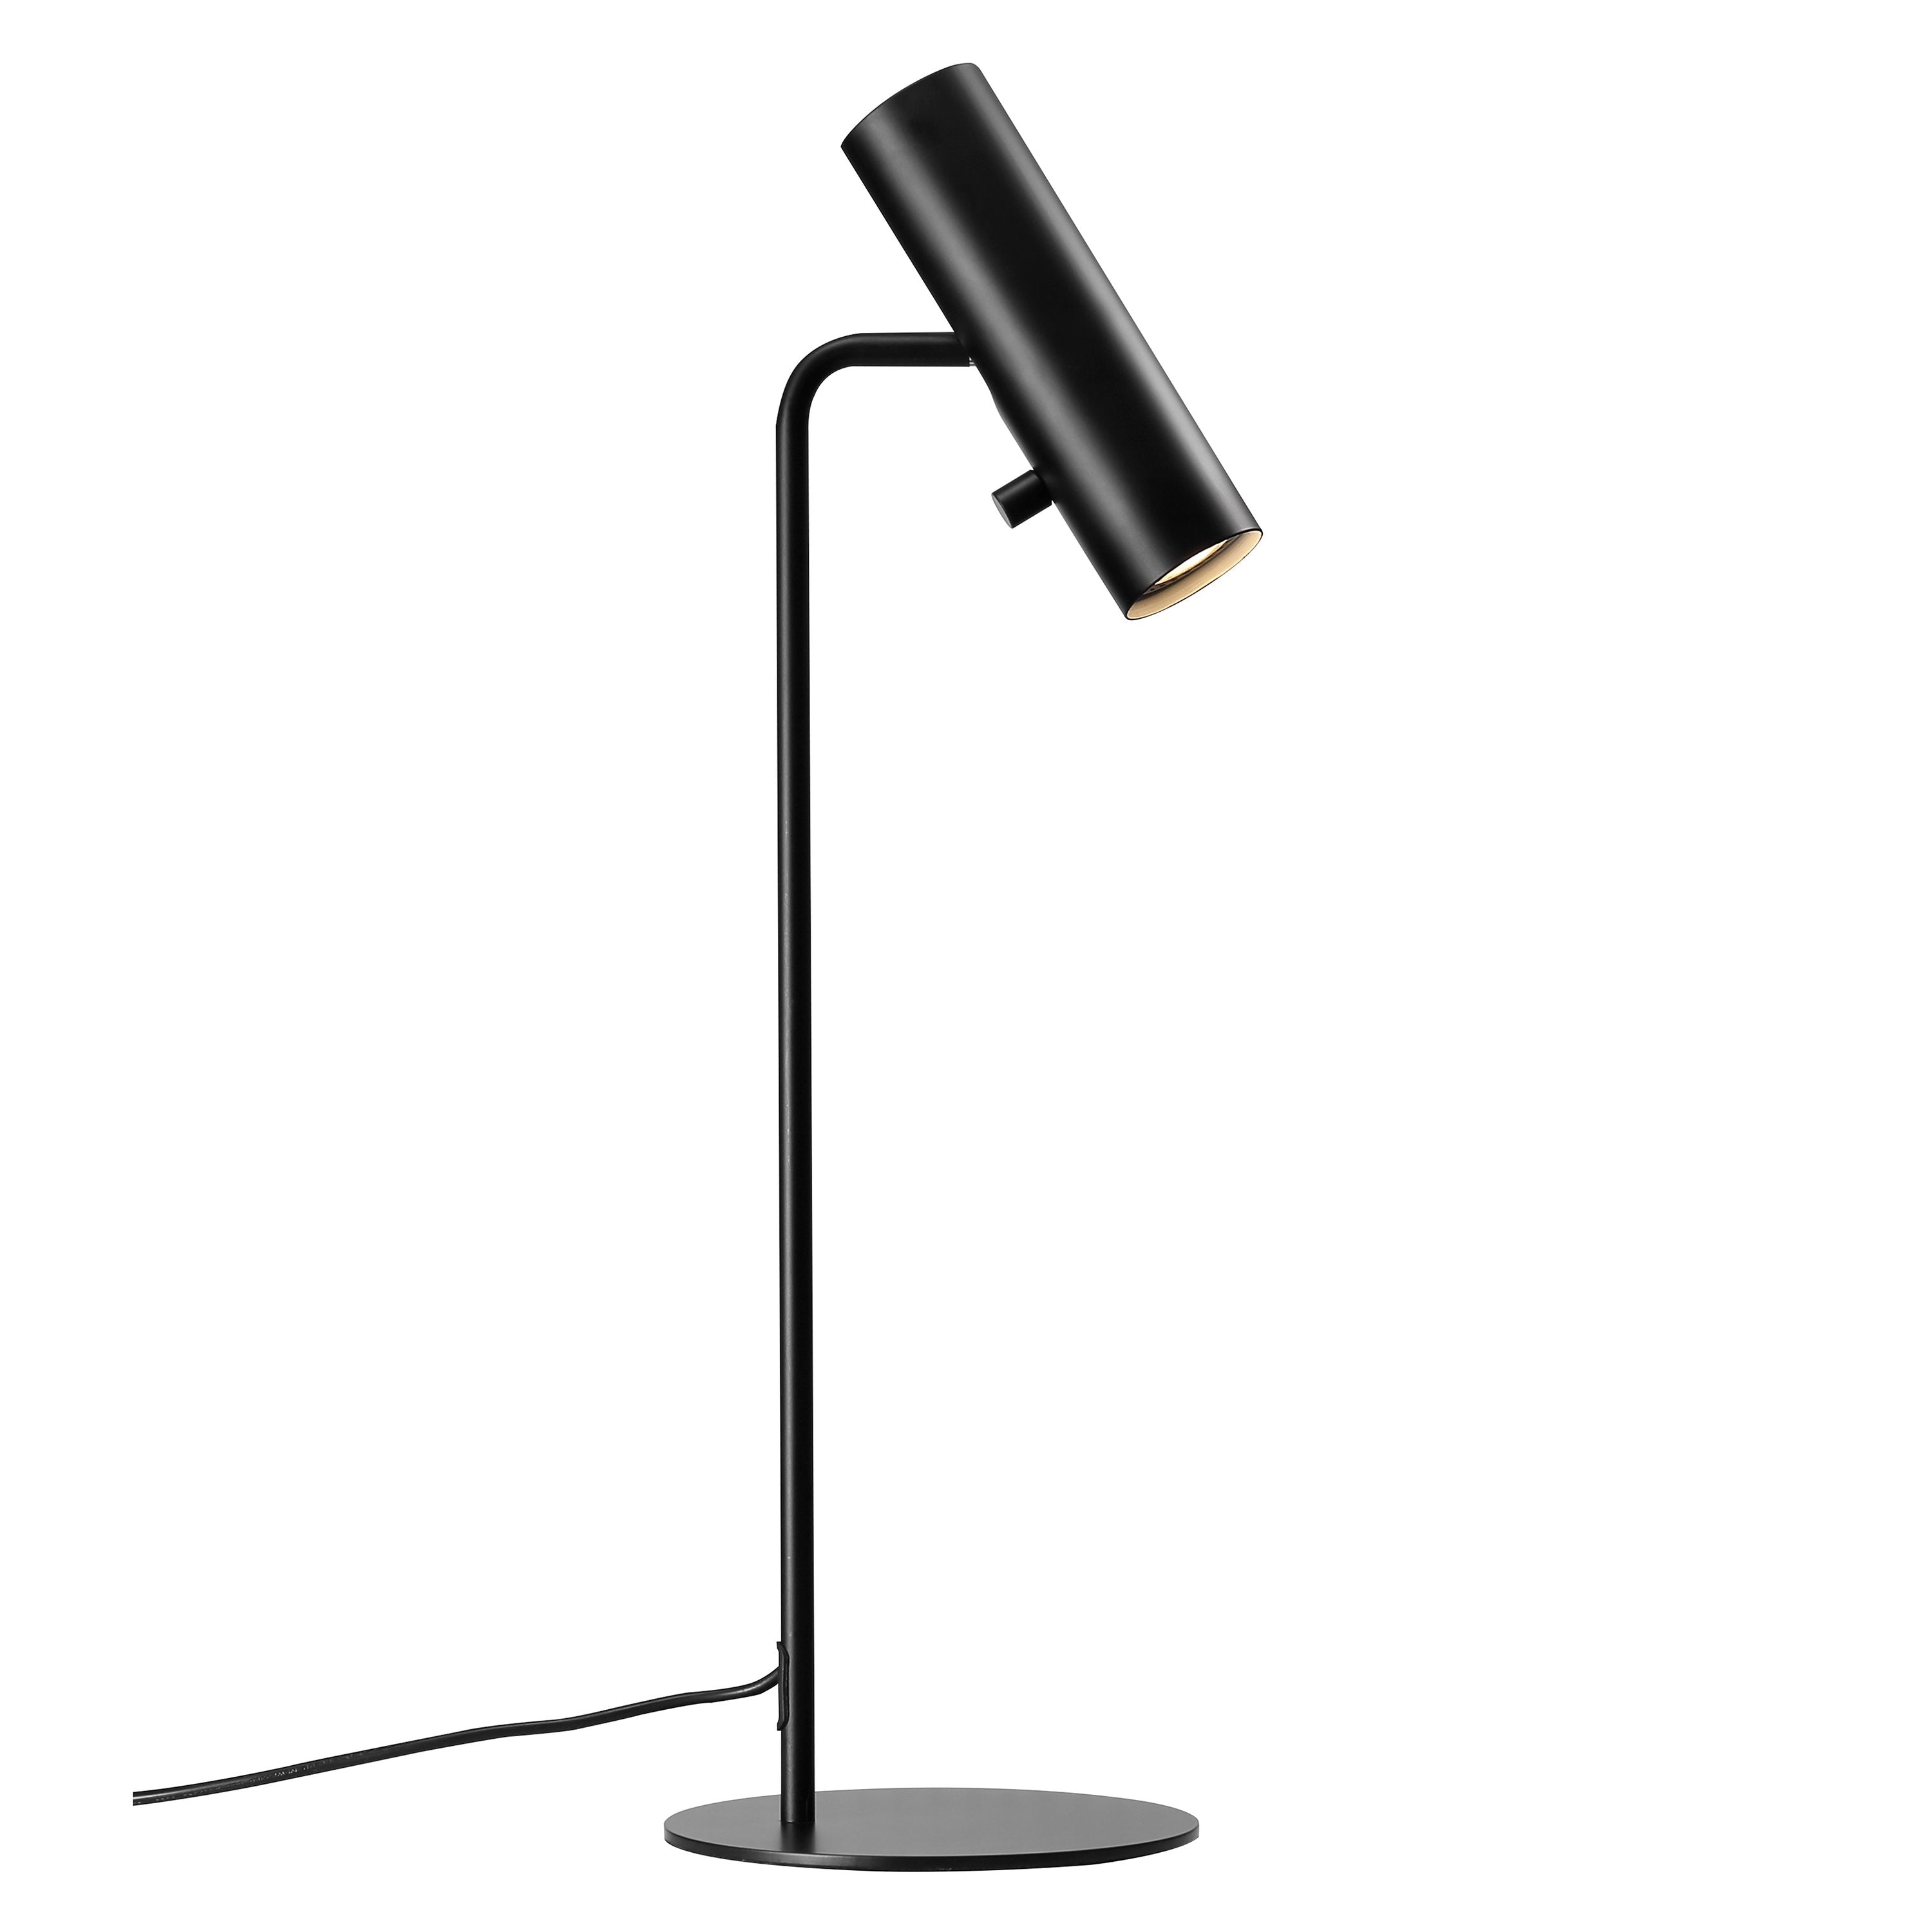 ePlafoniera - Mib 6 | Мінімалістична чорно-біла настільна лампа з сенсорним вимикачем | Дизайн для людей